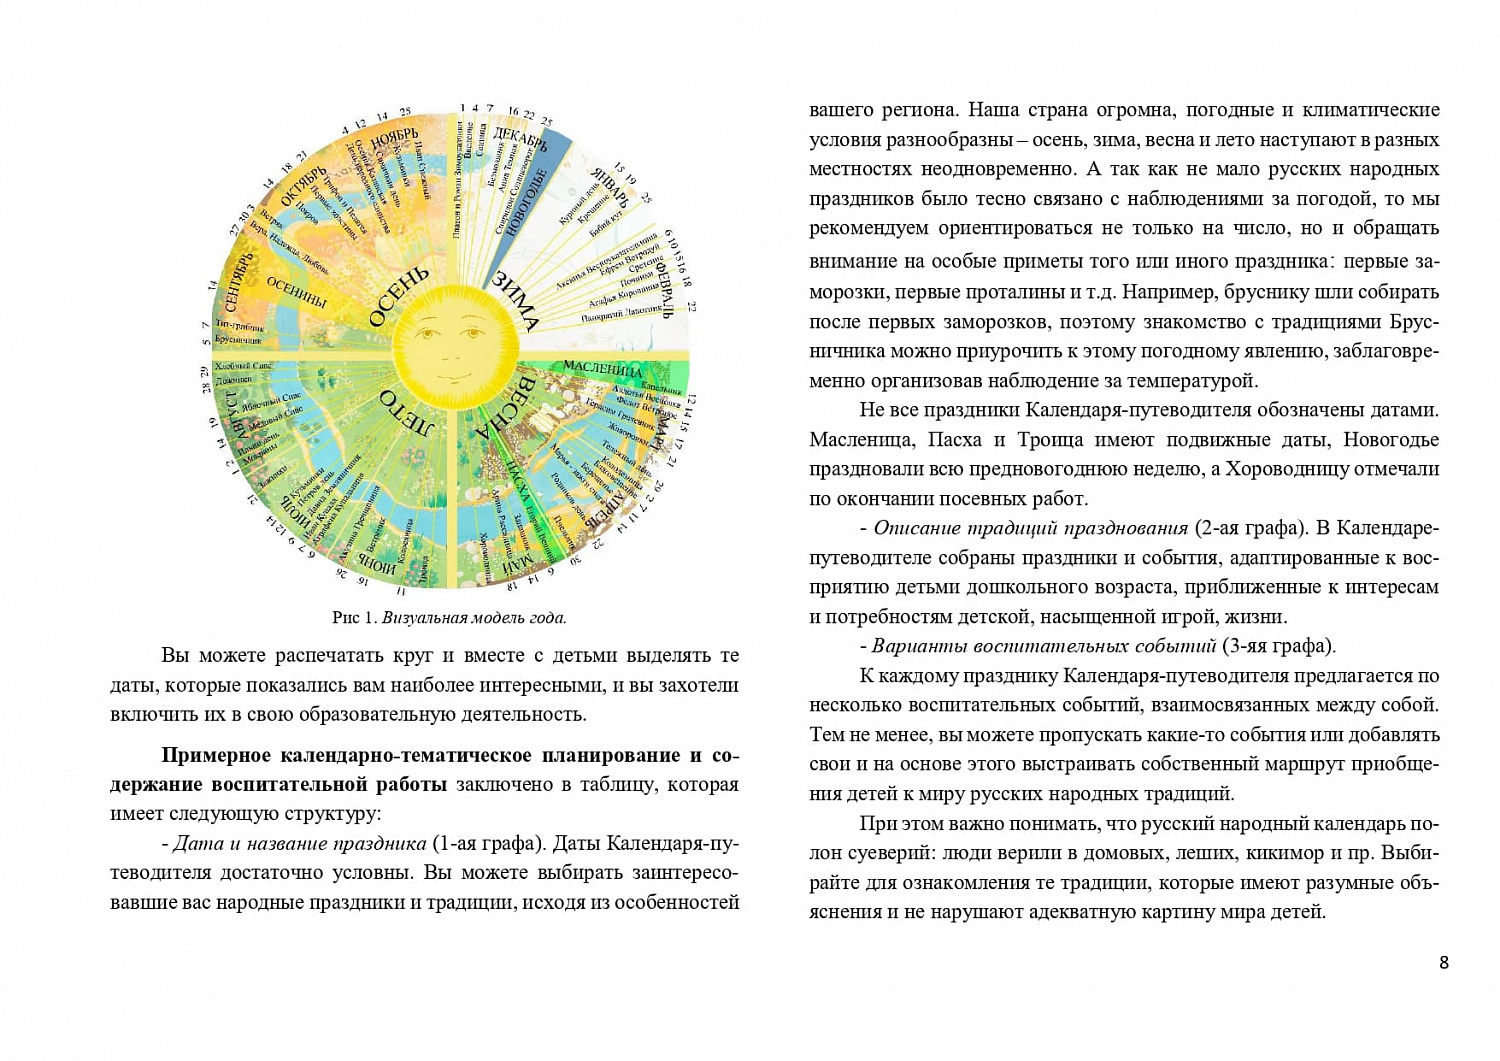 Календарь-путеводитель по русским народным традициям